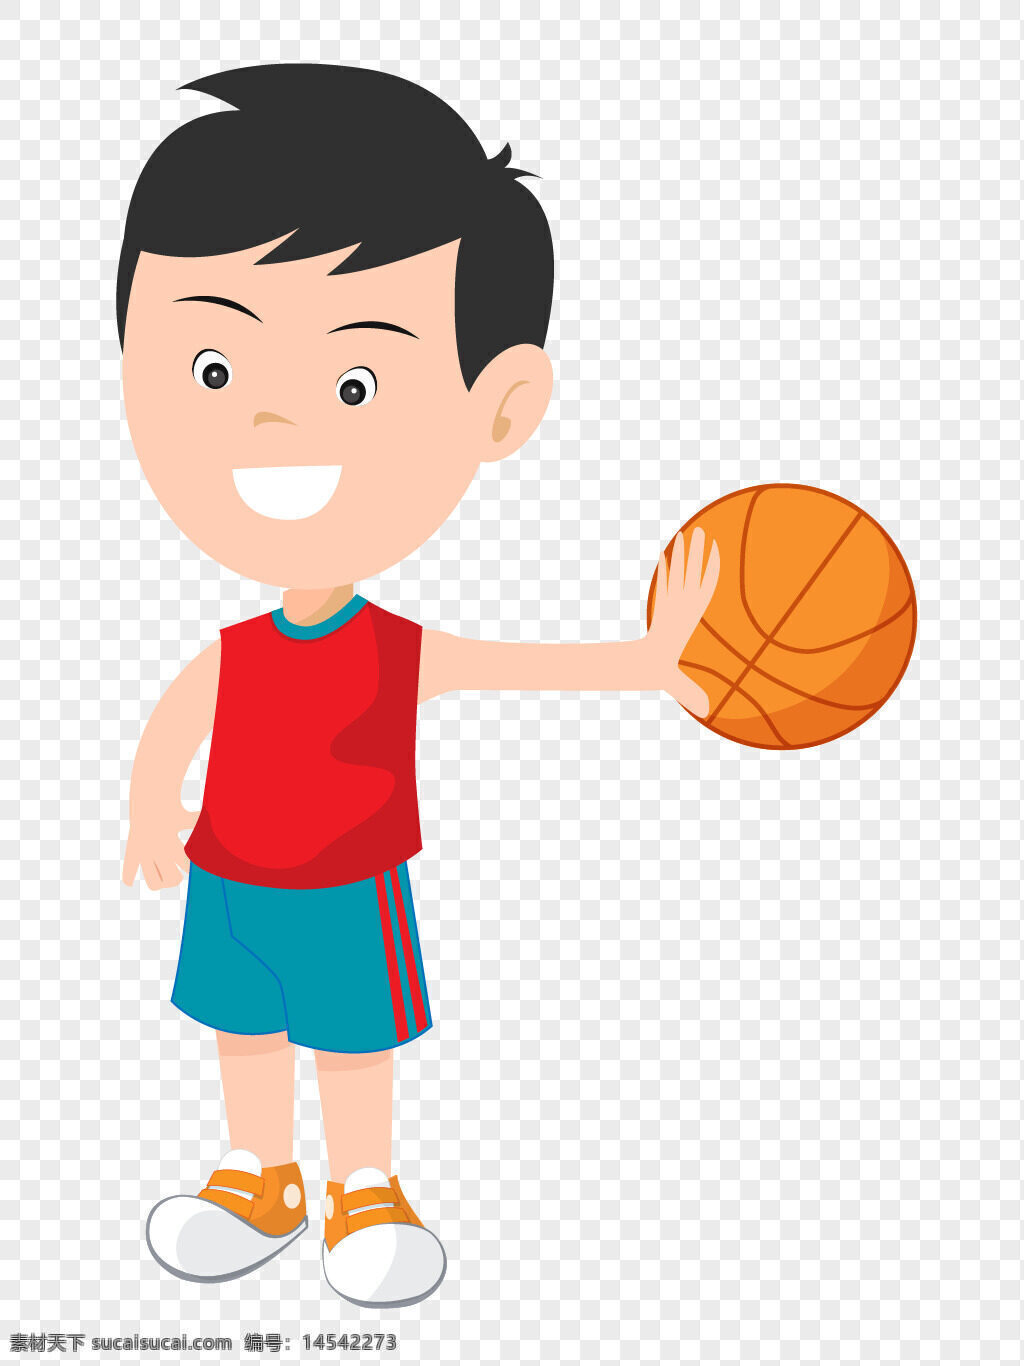 单手 拿篮球 卡通 打篮球 人物设计 篮球 打篮球的人物 单手拿篮球卡通打篮球的人物设计